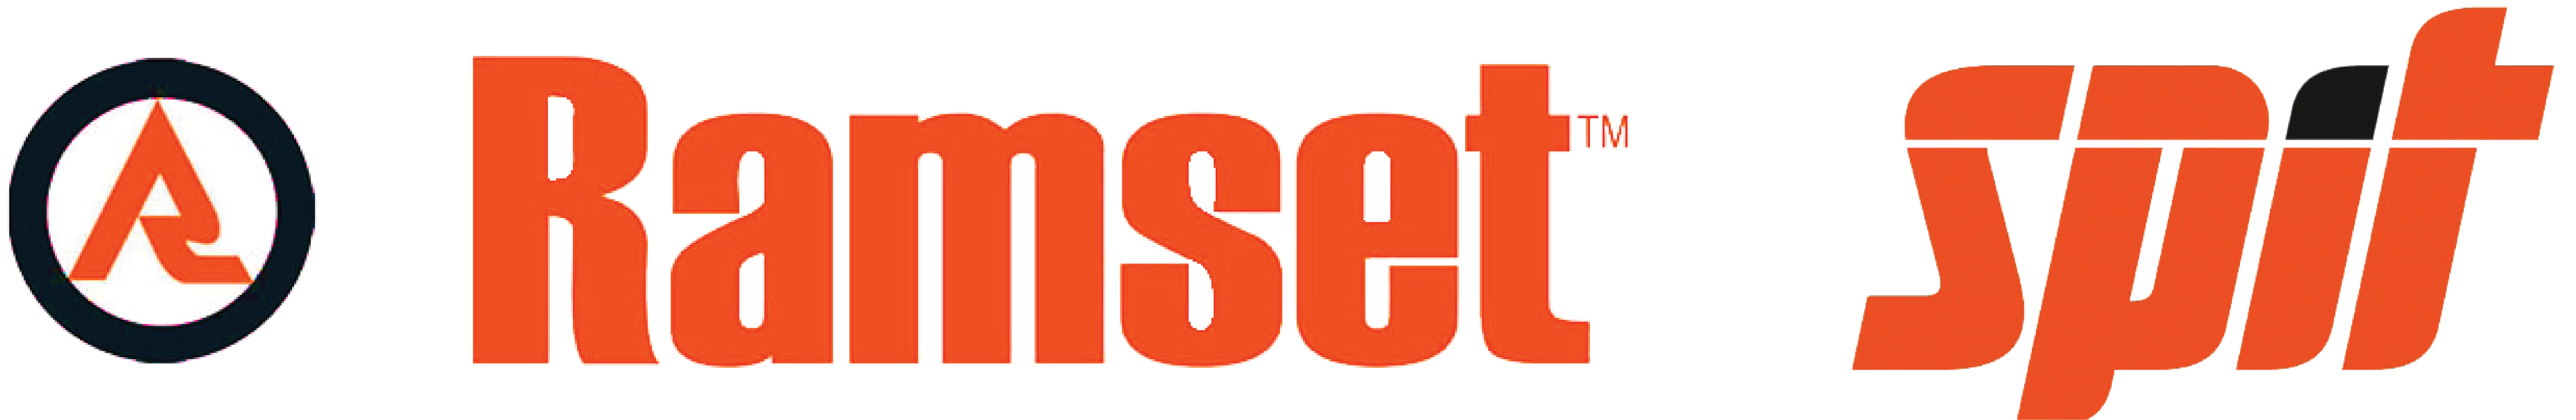 ramset-mix-logo